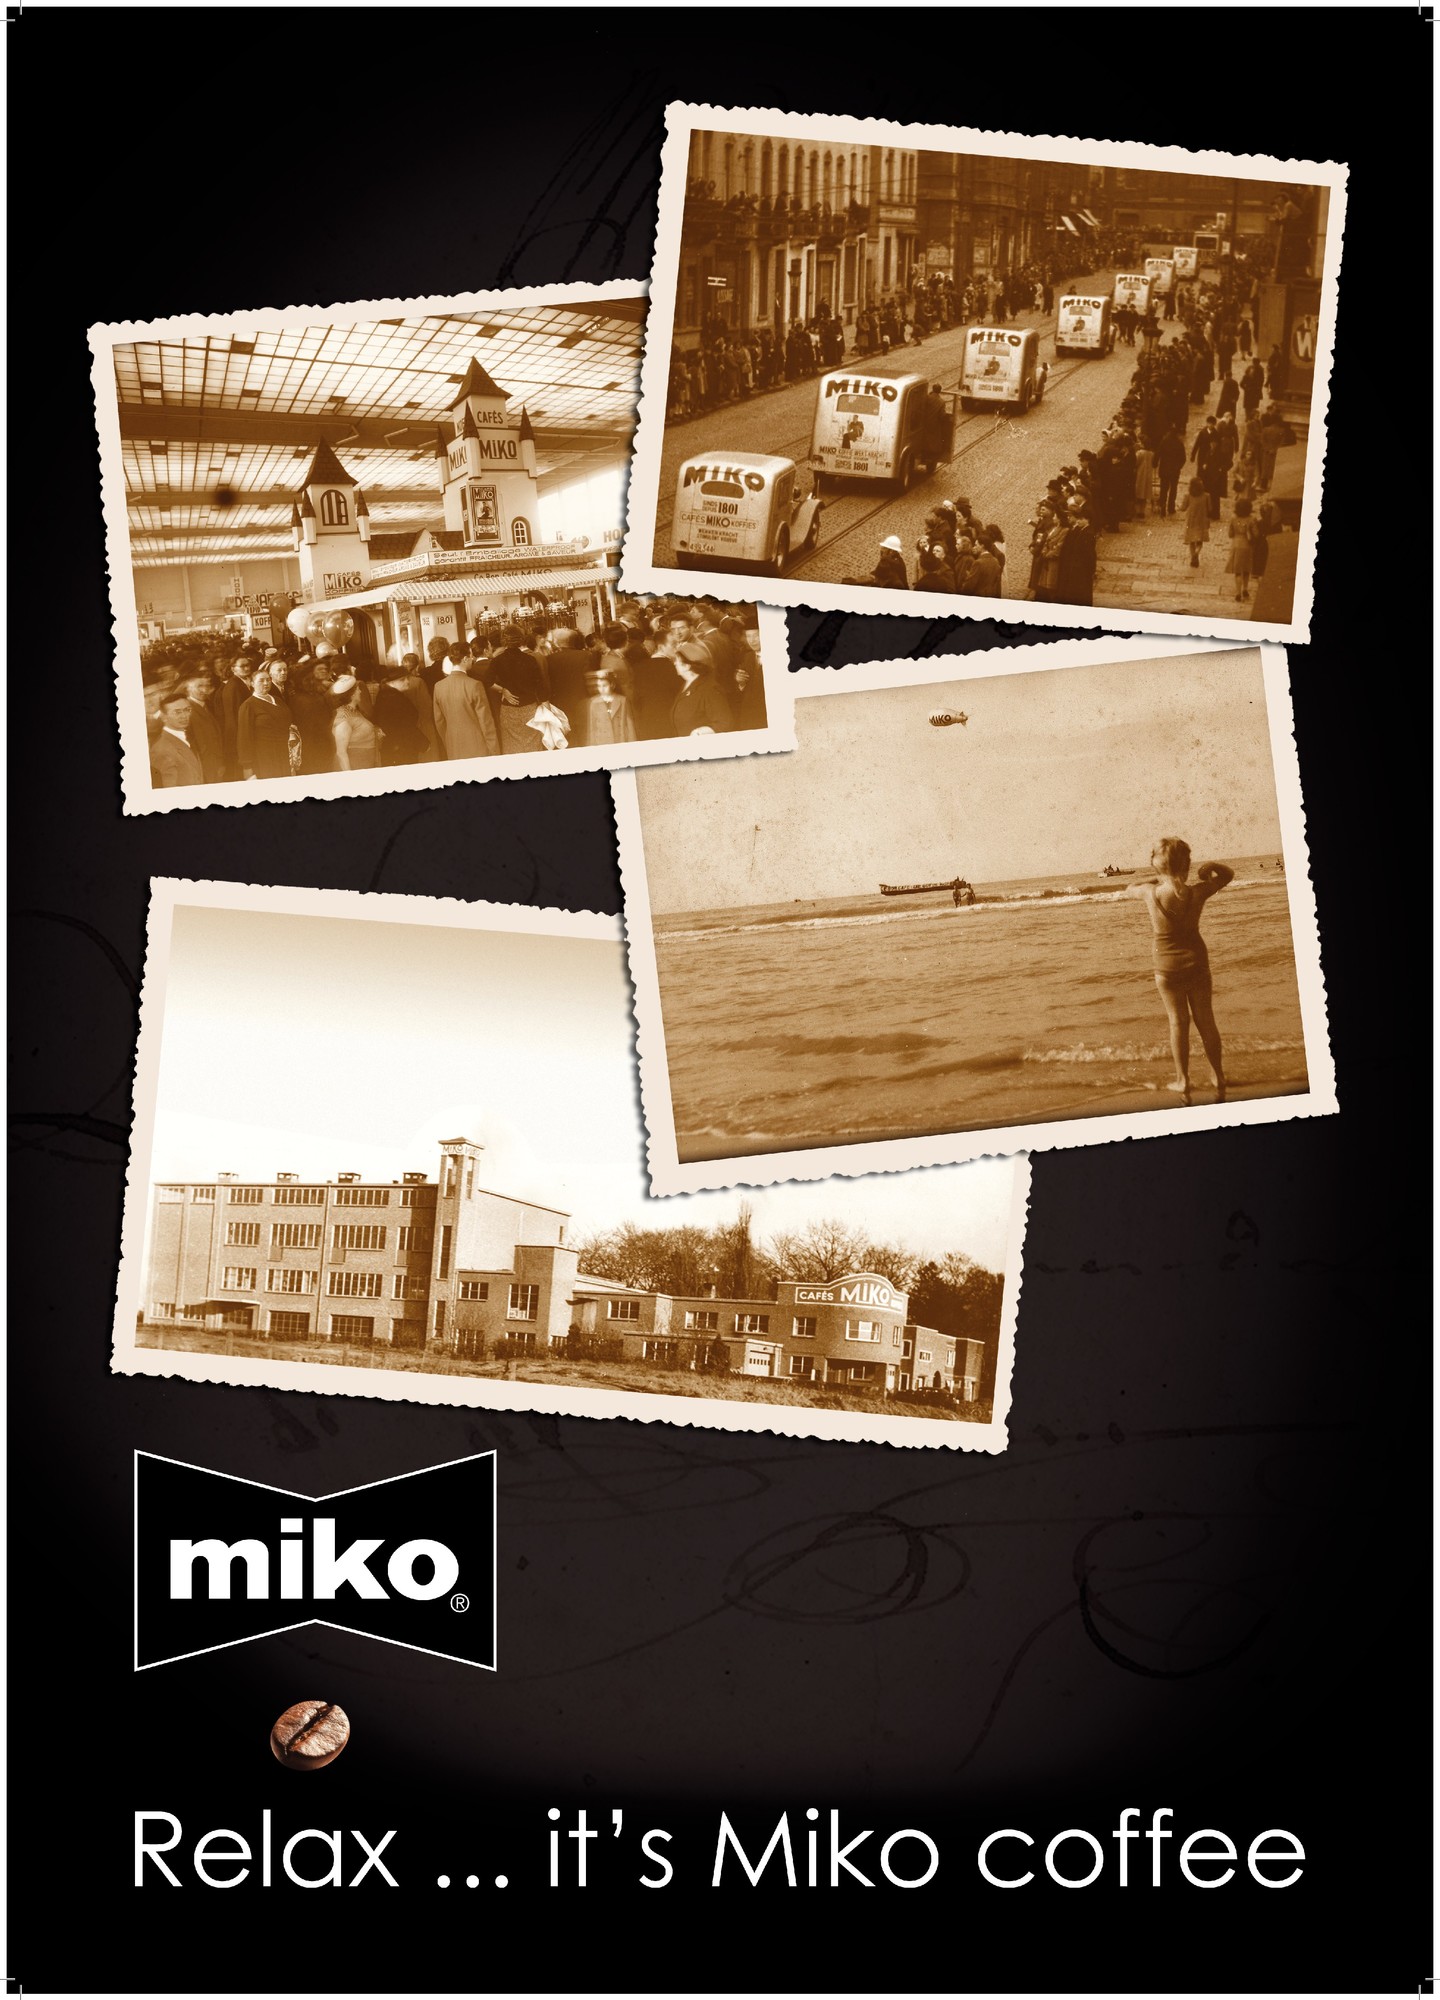 Advertentie van Miko Koffie. Collectie Miko Koffie NV, Turnhout.